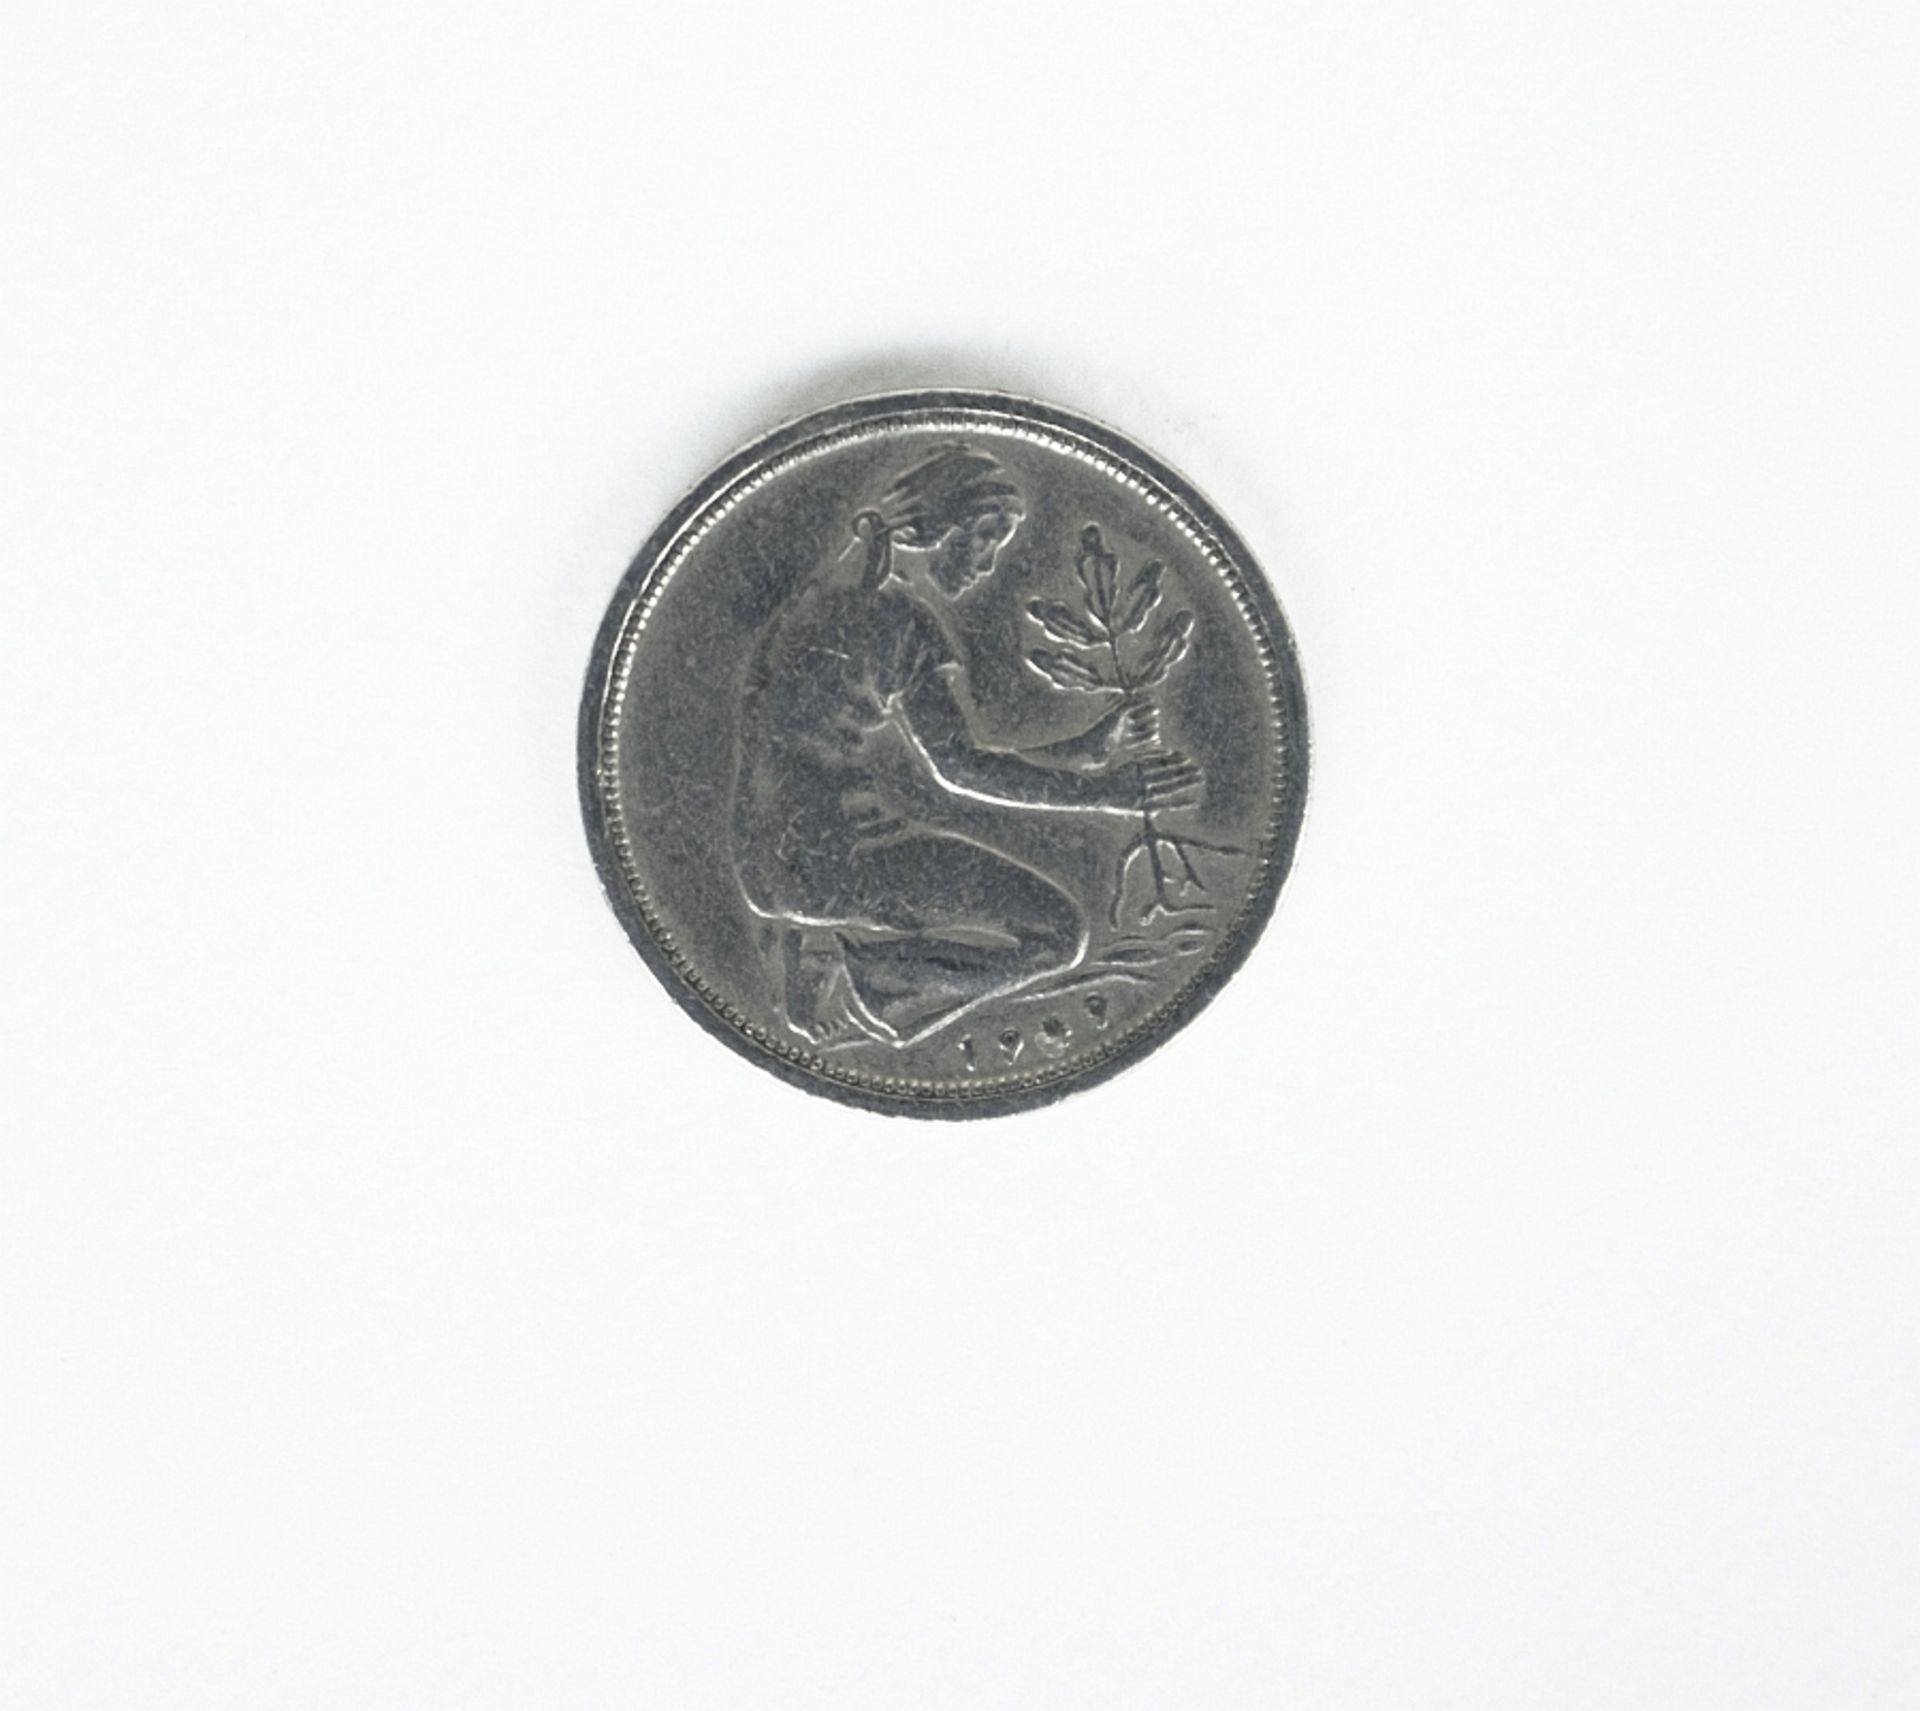 Bundesrepublik Deutschland: 50 Pfennig, Bank Deutscher Laender - Image 2 of 2